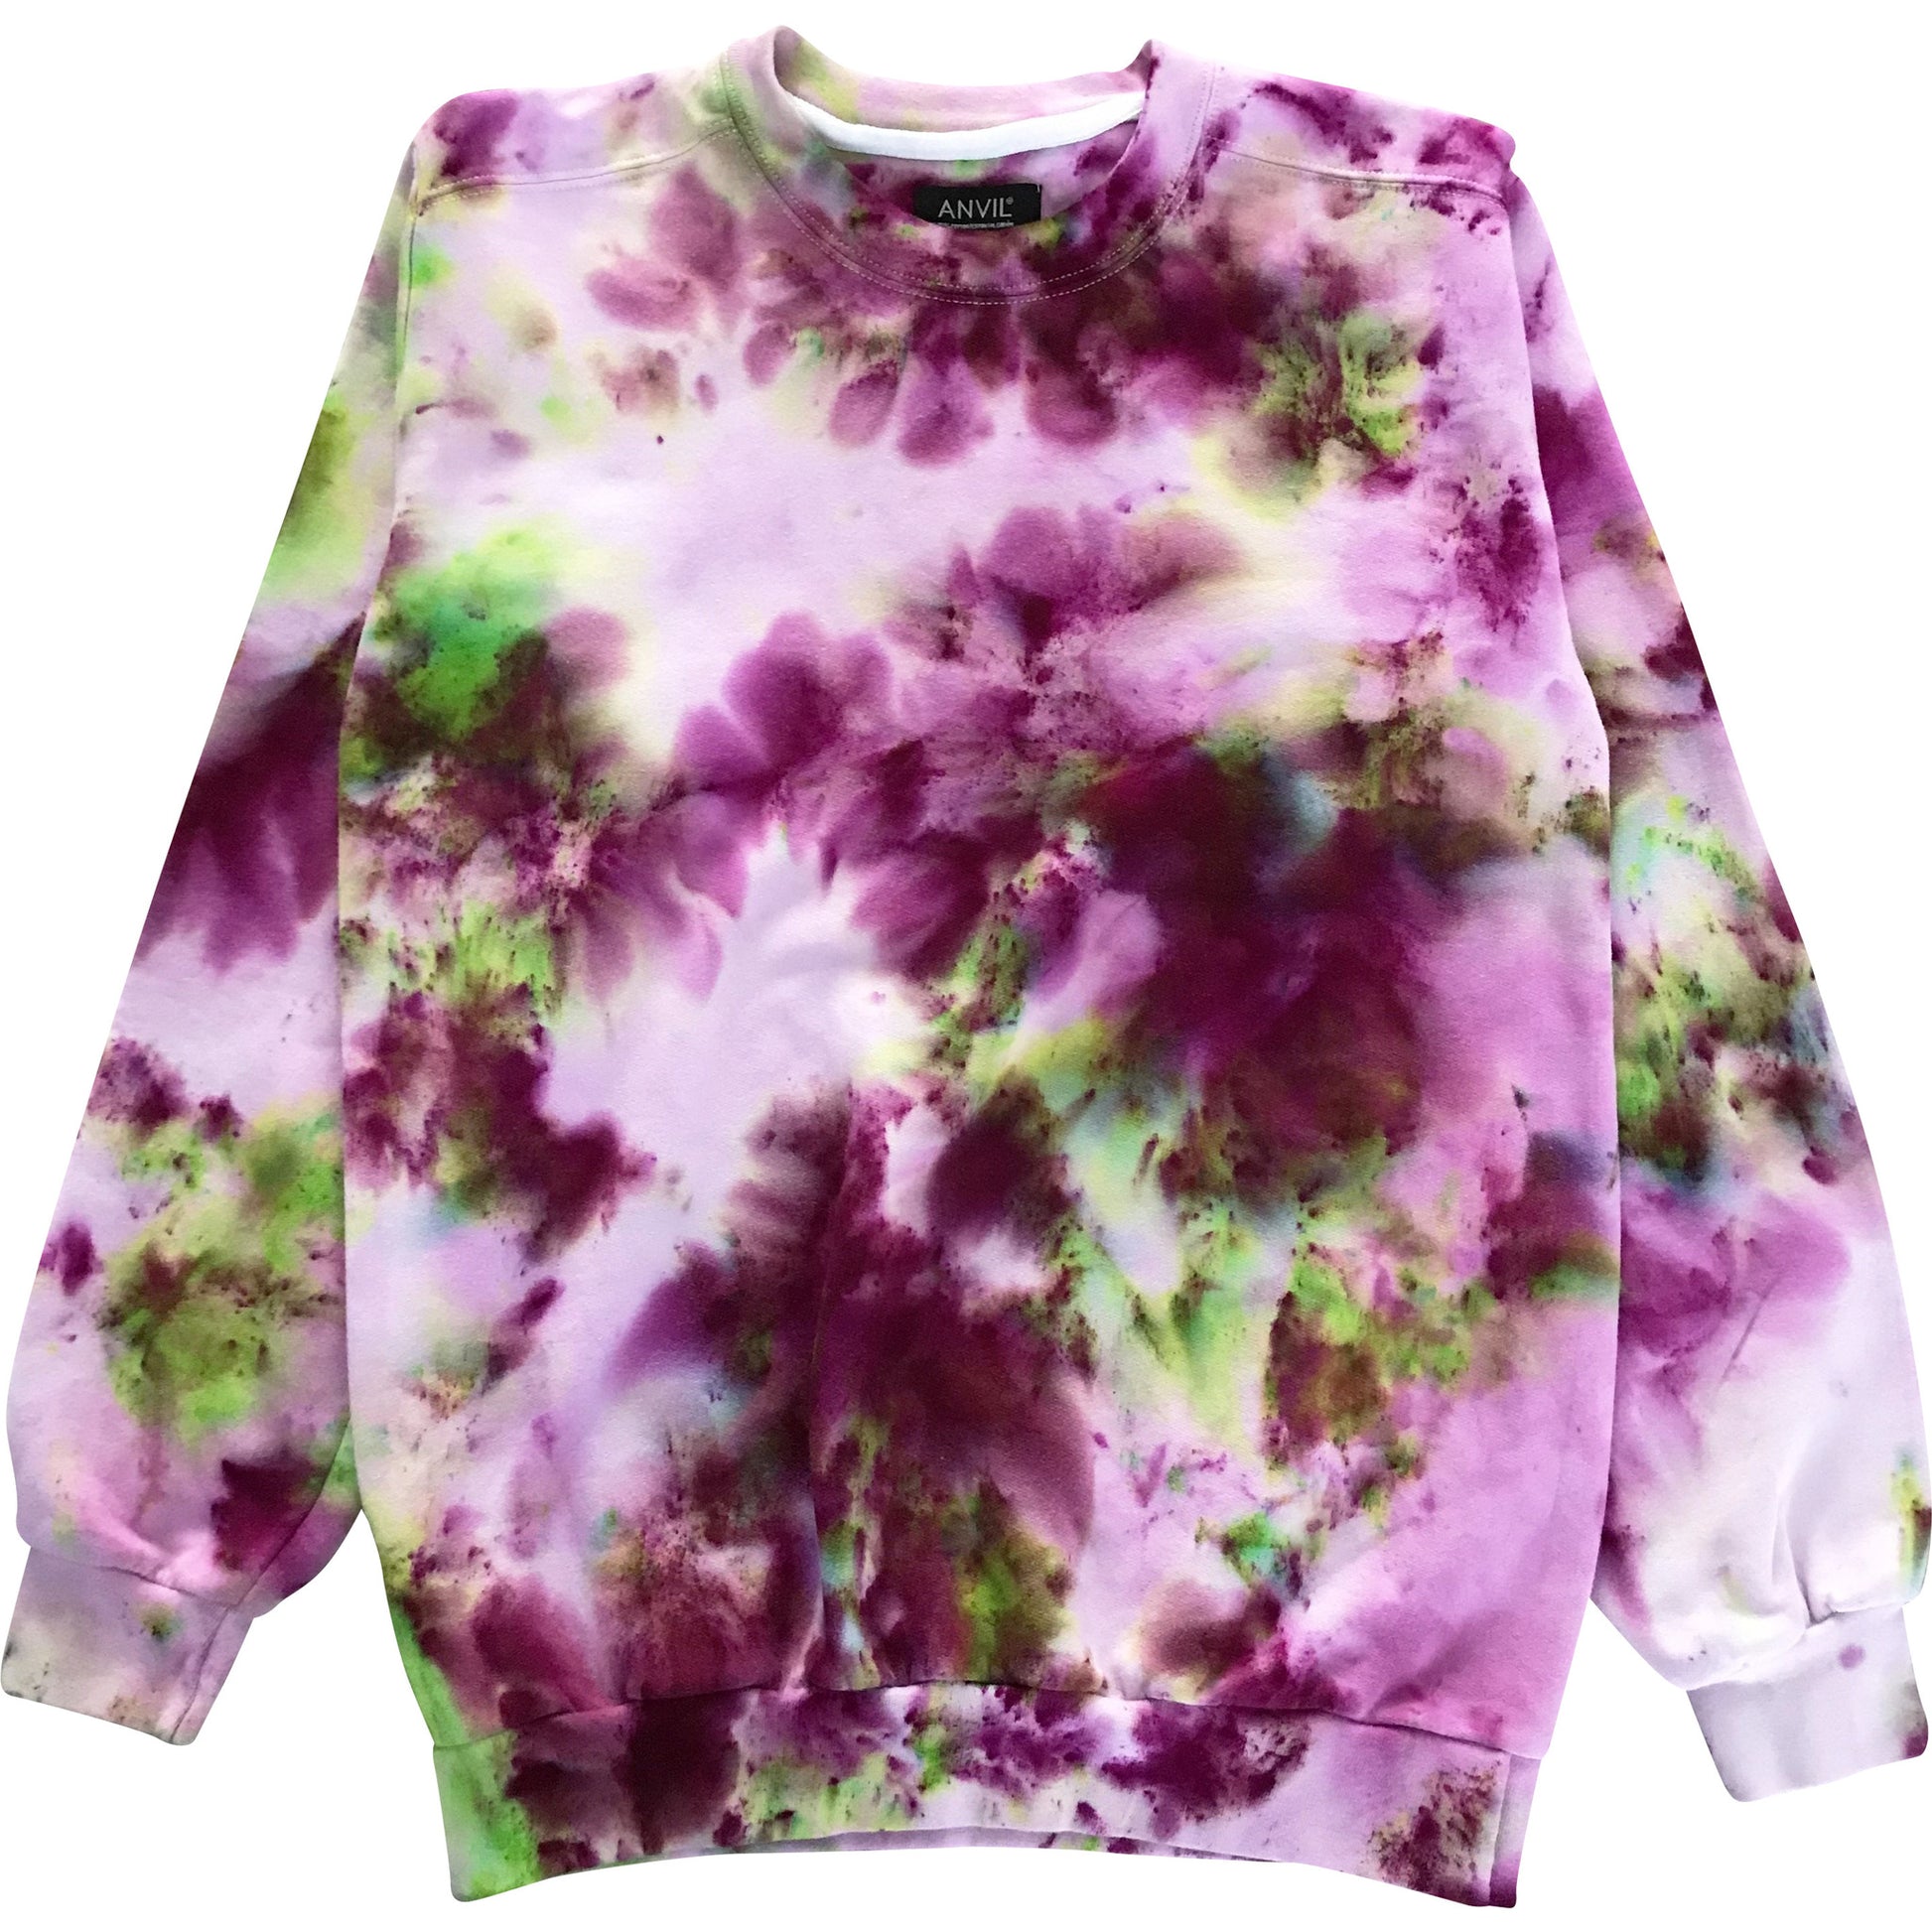 Flower Grunge Tie Dye Organic Cotton Sweatshirt.